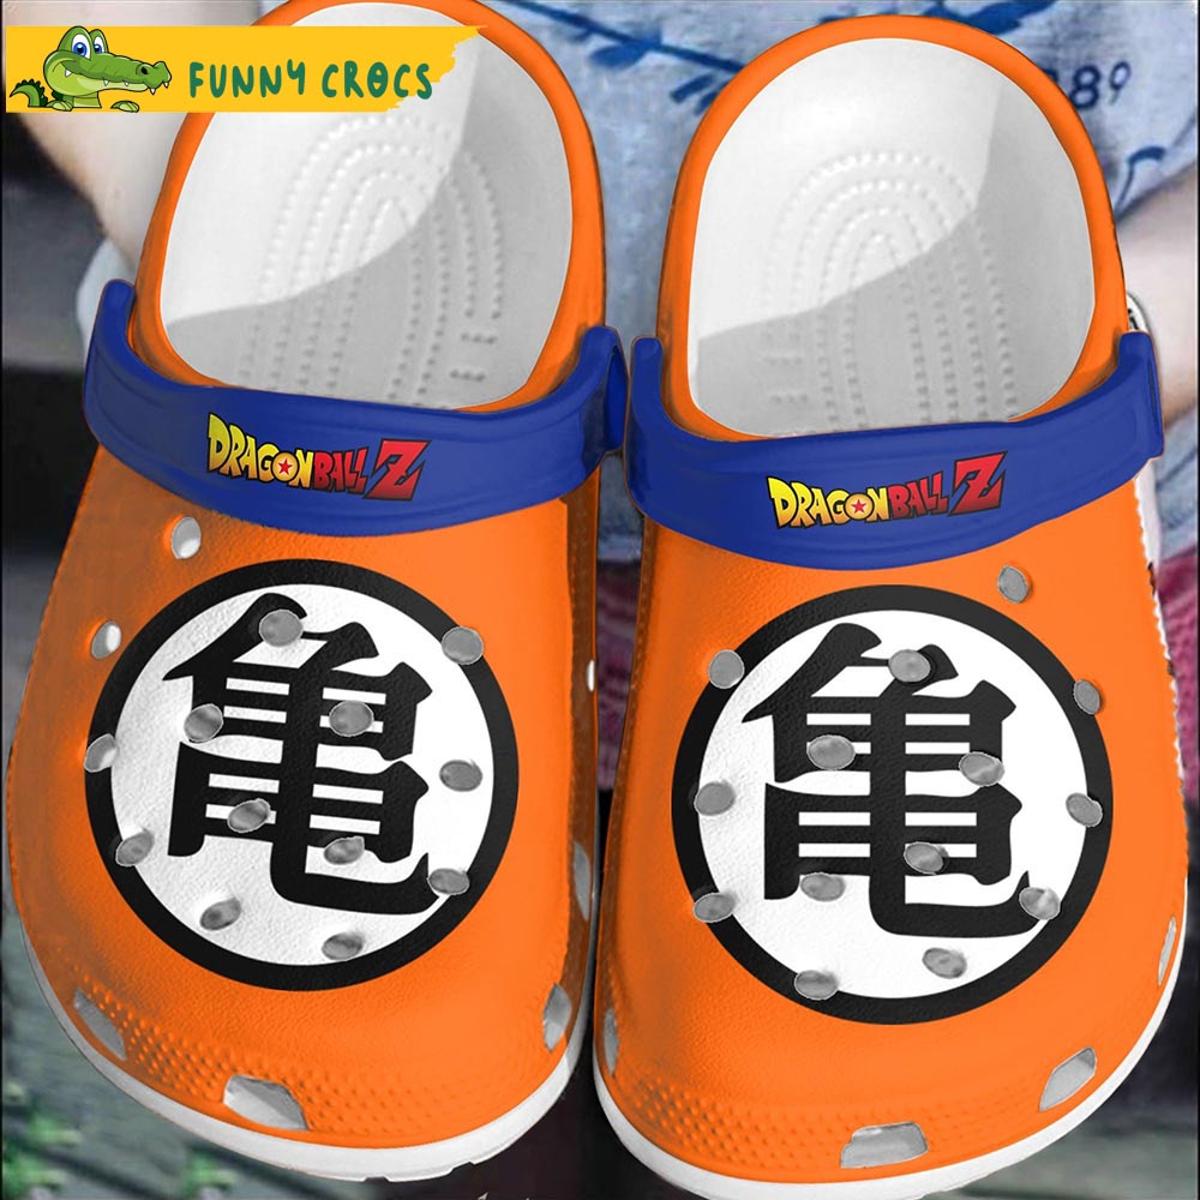 Frieza And Goku Kill Jiren Dragon Ball Z Crocs Clog Shoes